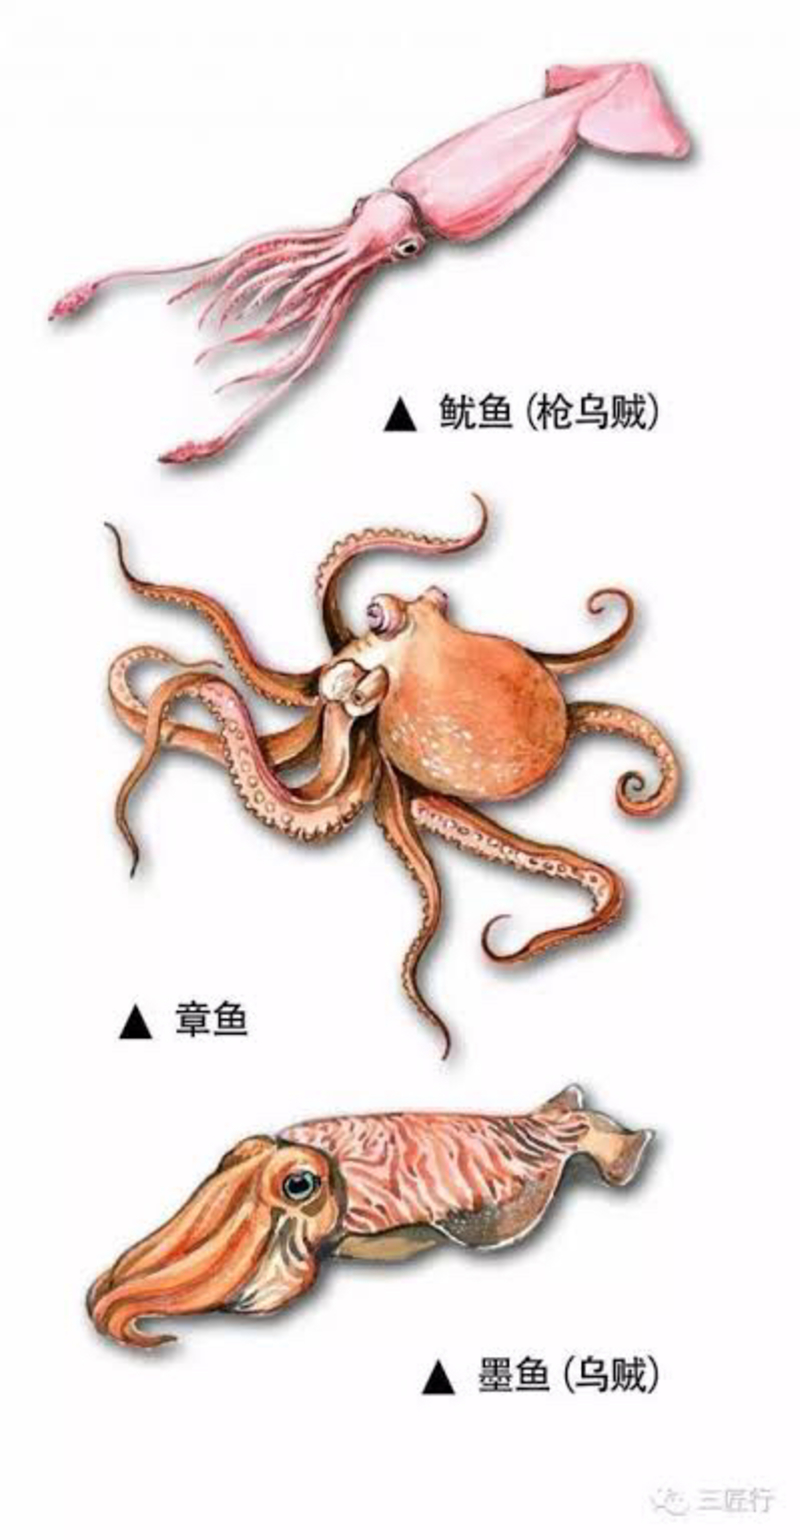 Cuttlefish と Squid はどう違いますか Hinative